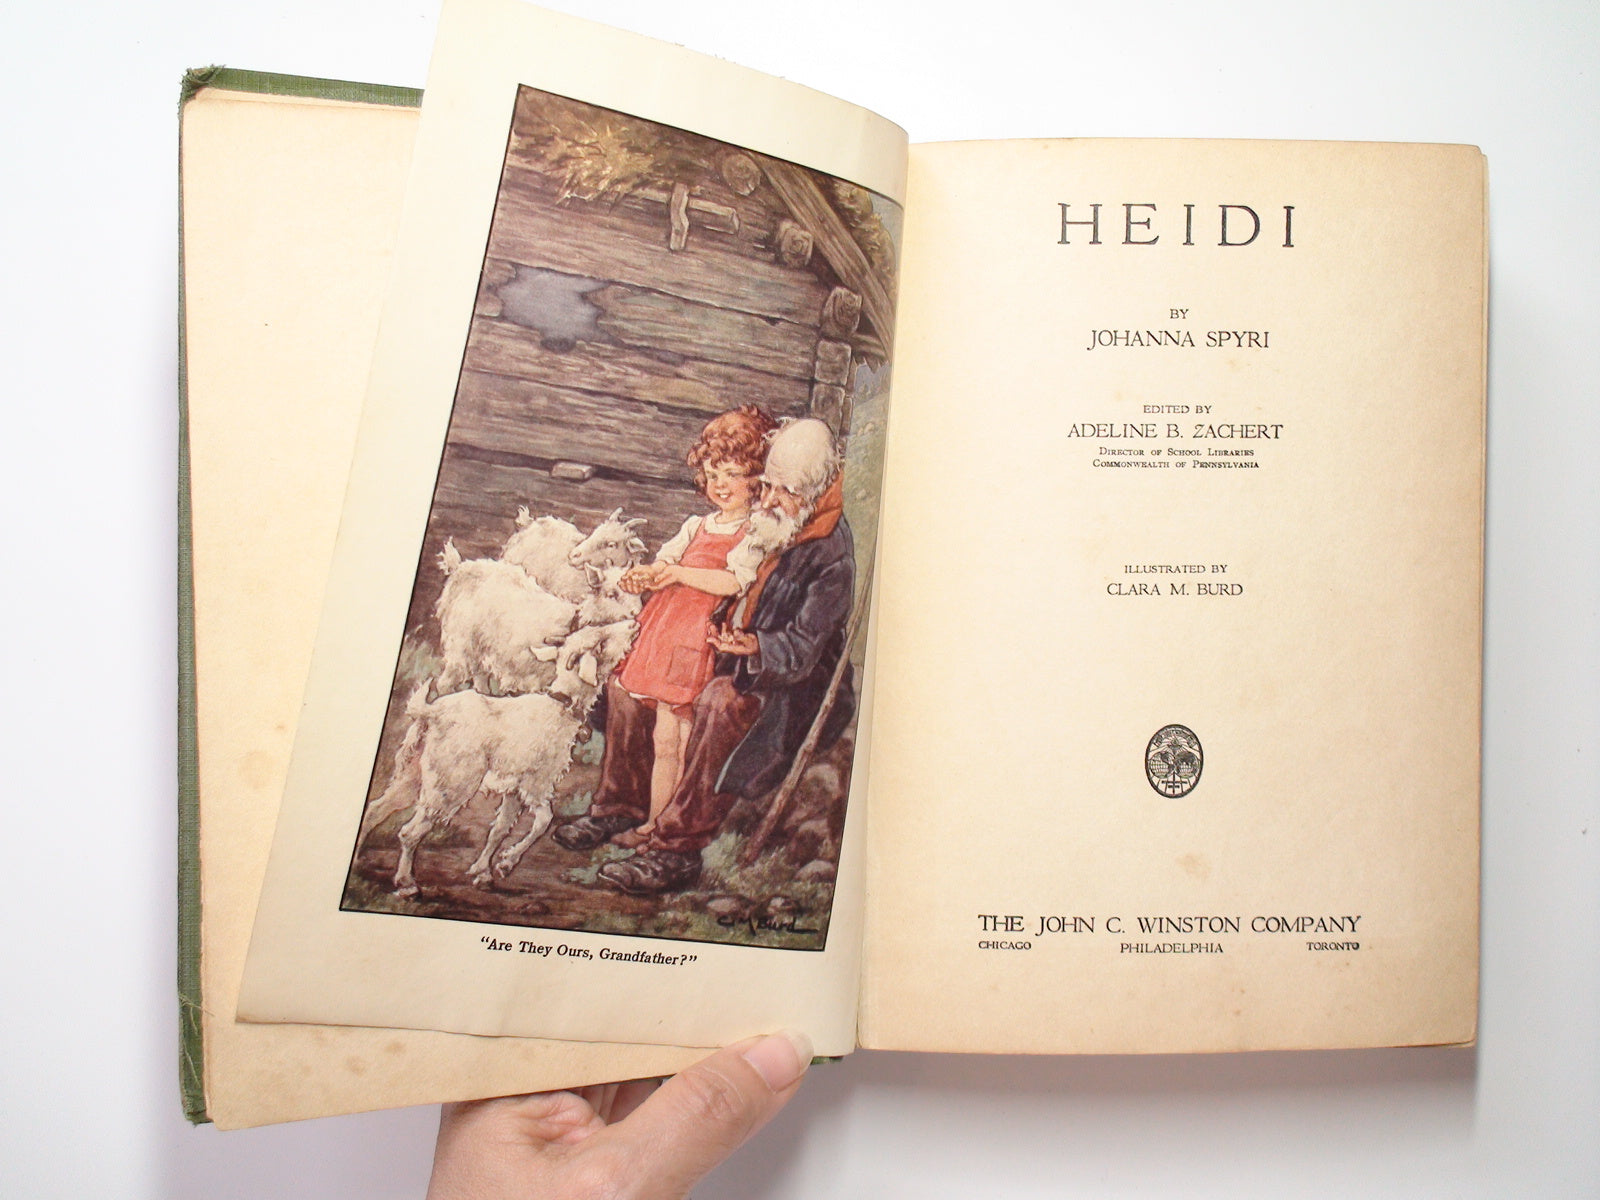 Heidi by Johanna Spyri, Illustrated by Clara M. Burd, 1925